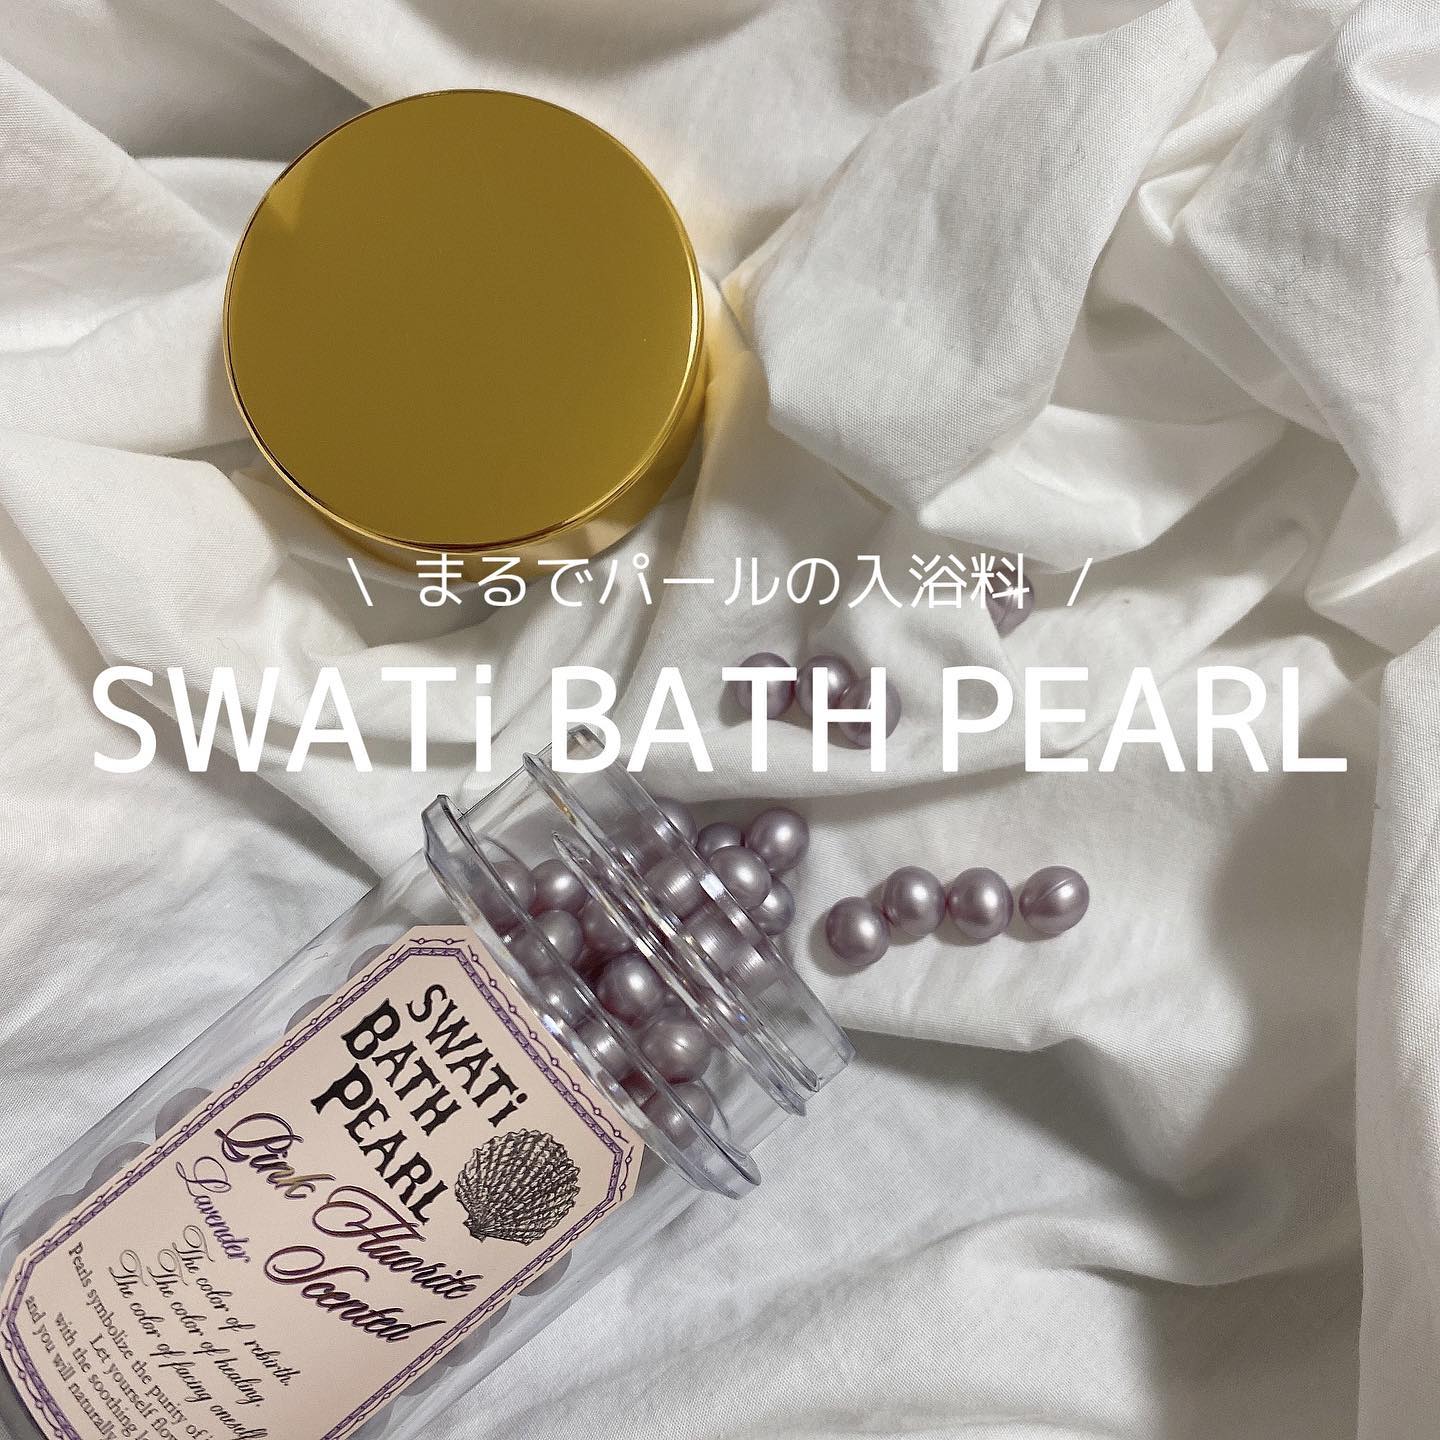 【SWATi BATH PEARL】__aya812__様